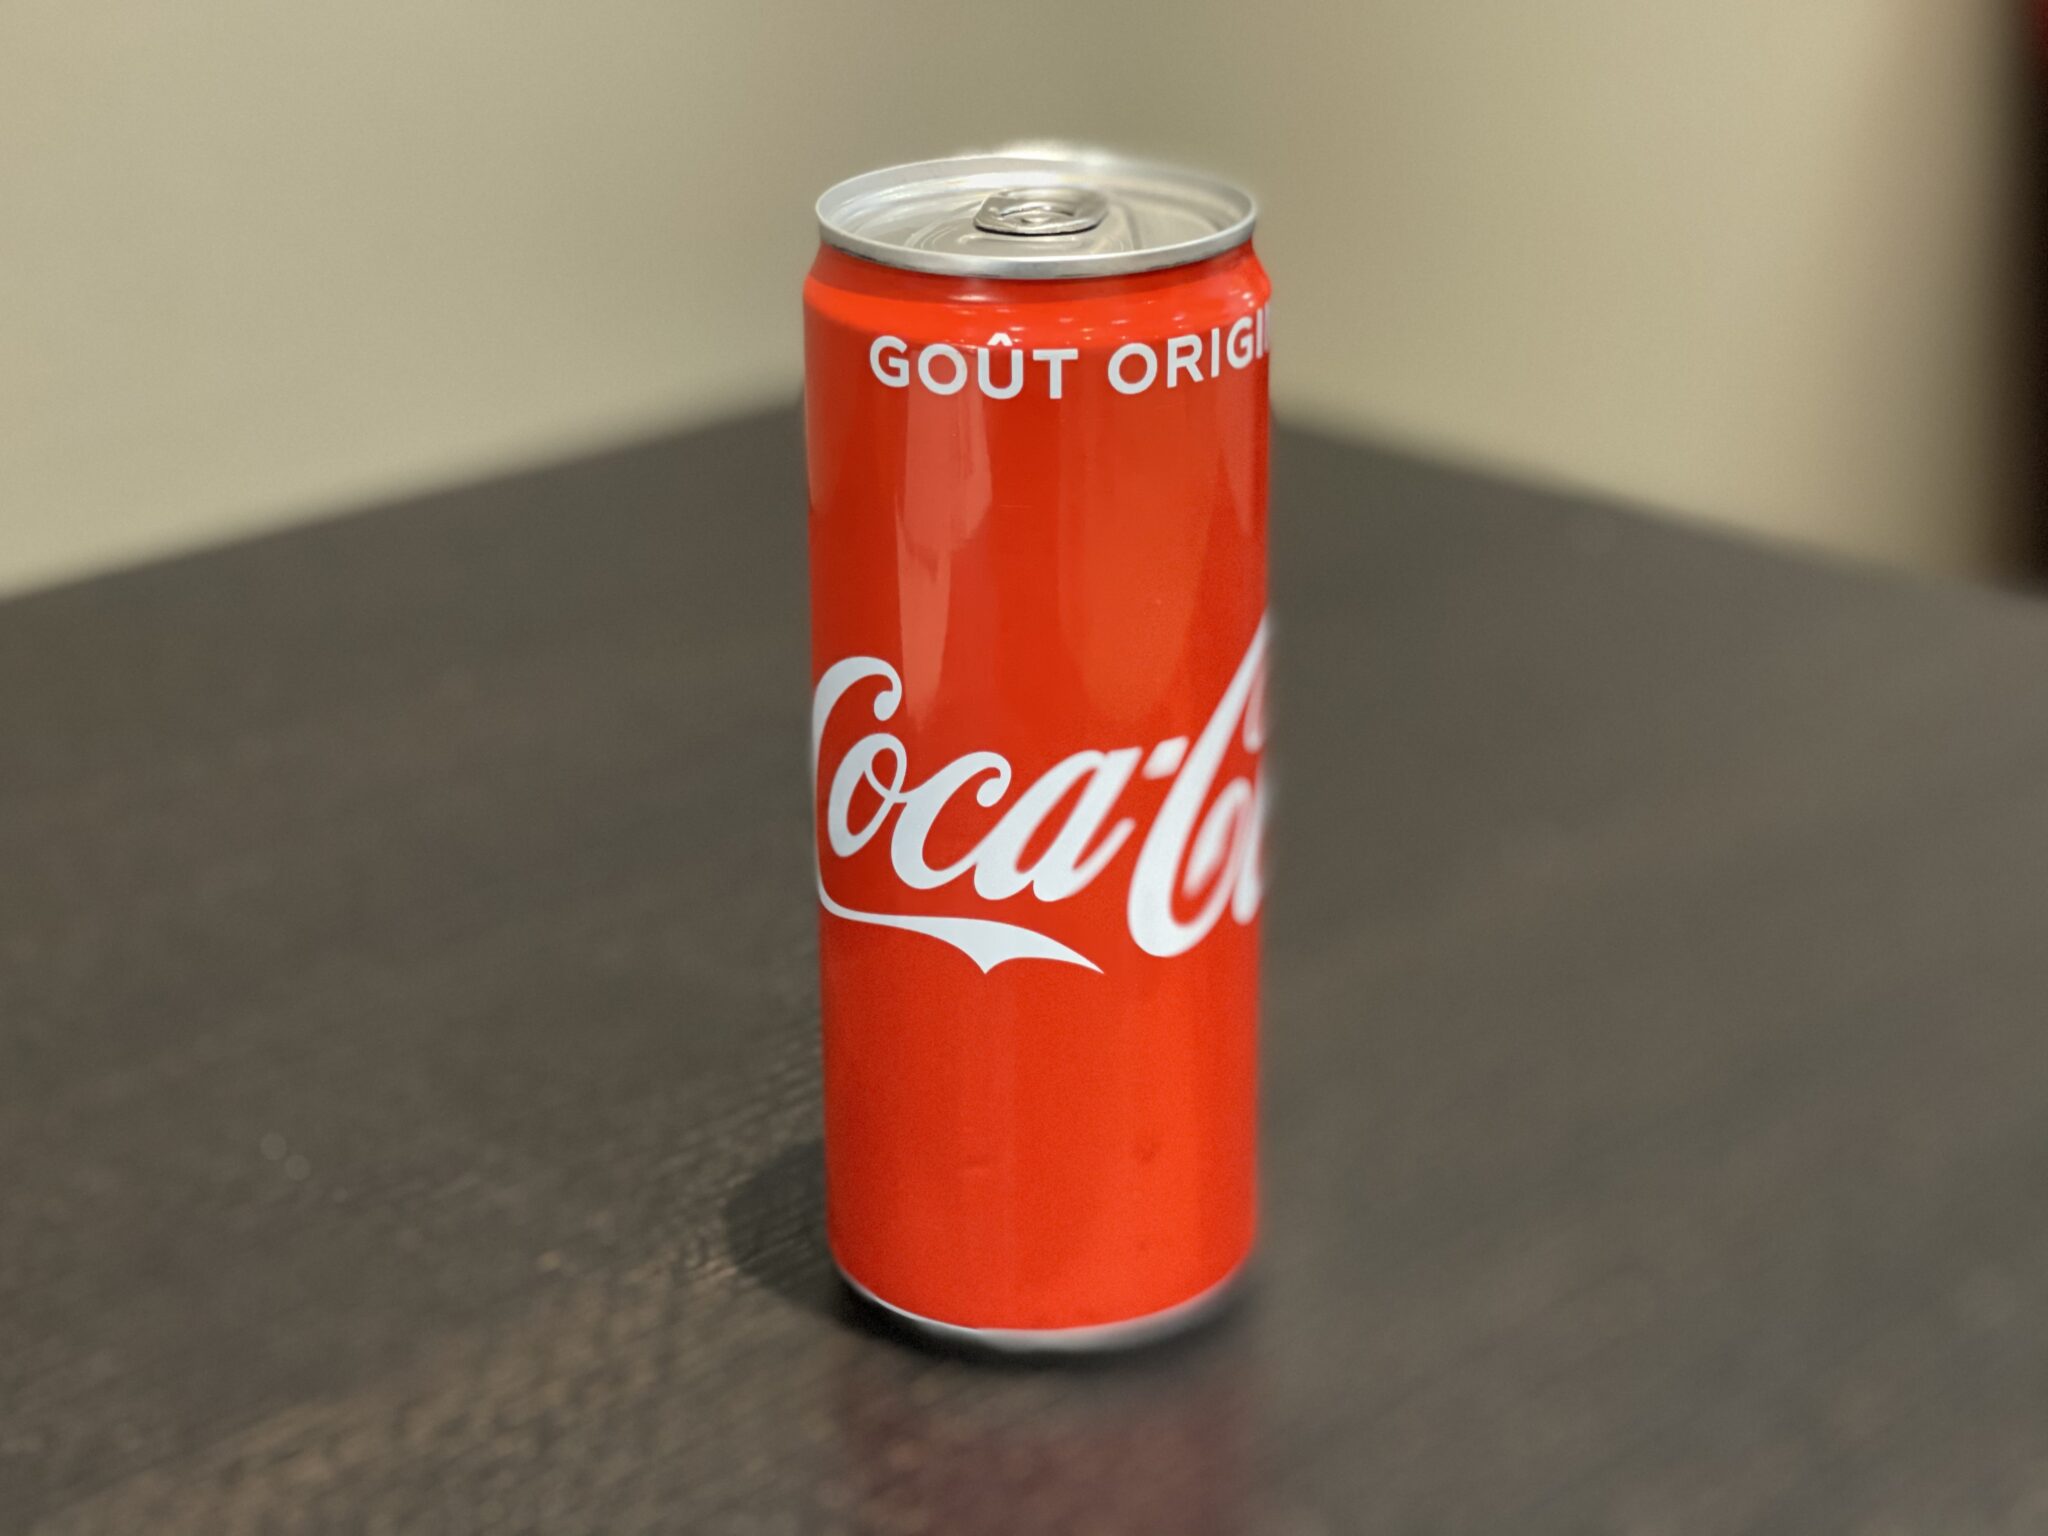 Coca cola canette